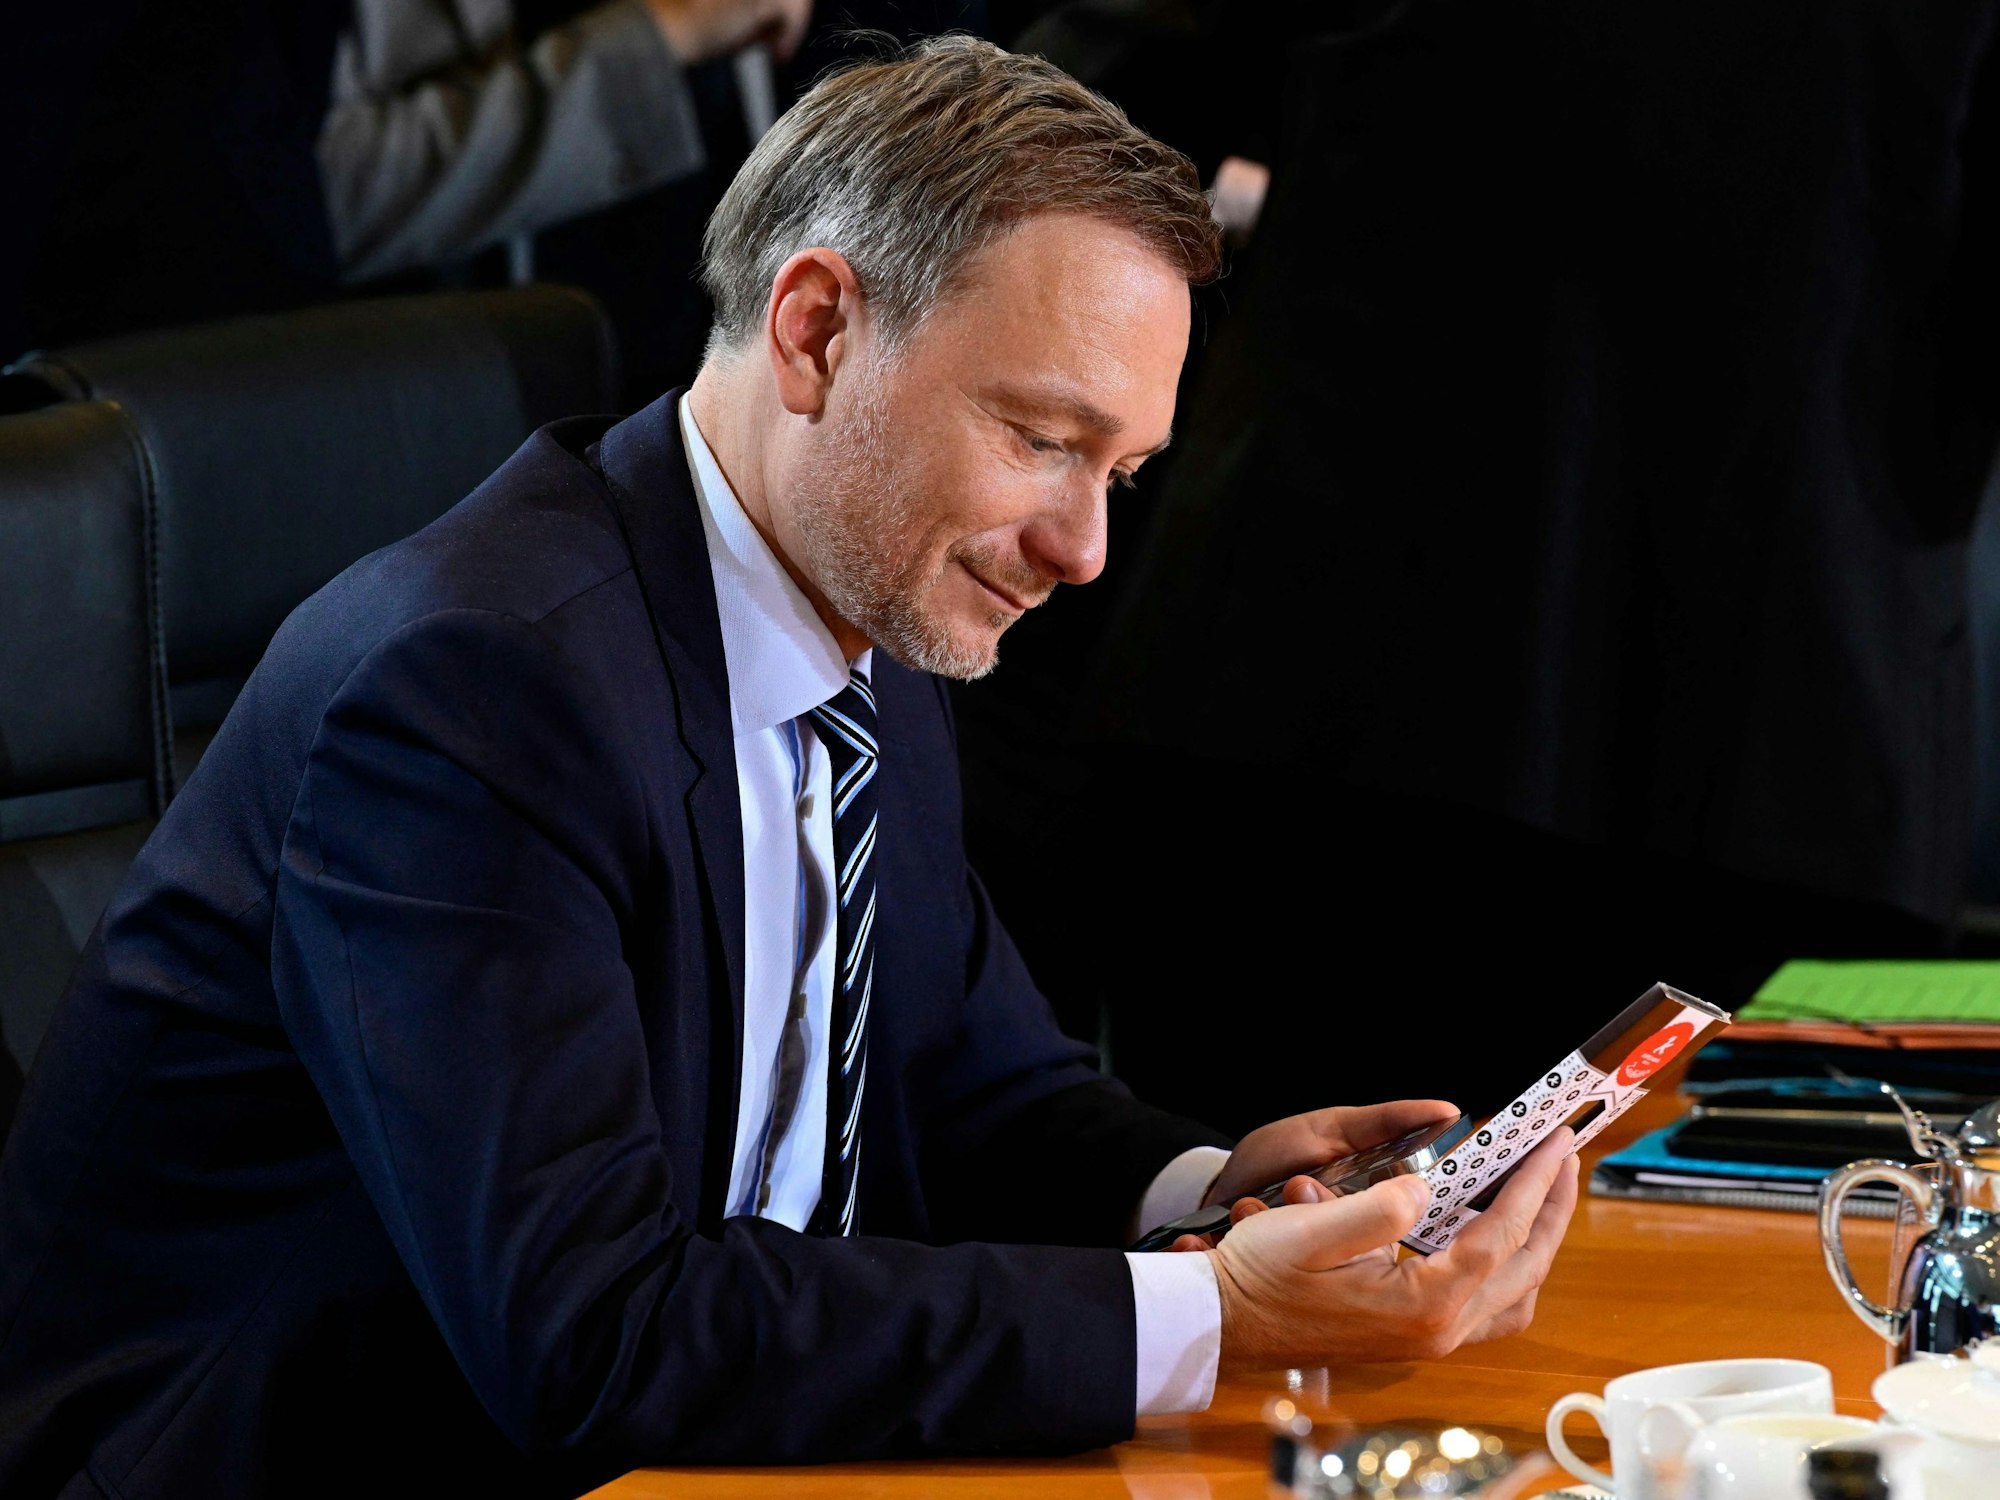 Christian Lindner bei der Sitzung des Bundeskabinetts im Bundeskanzleramt.